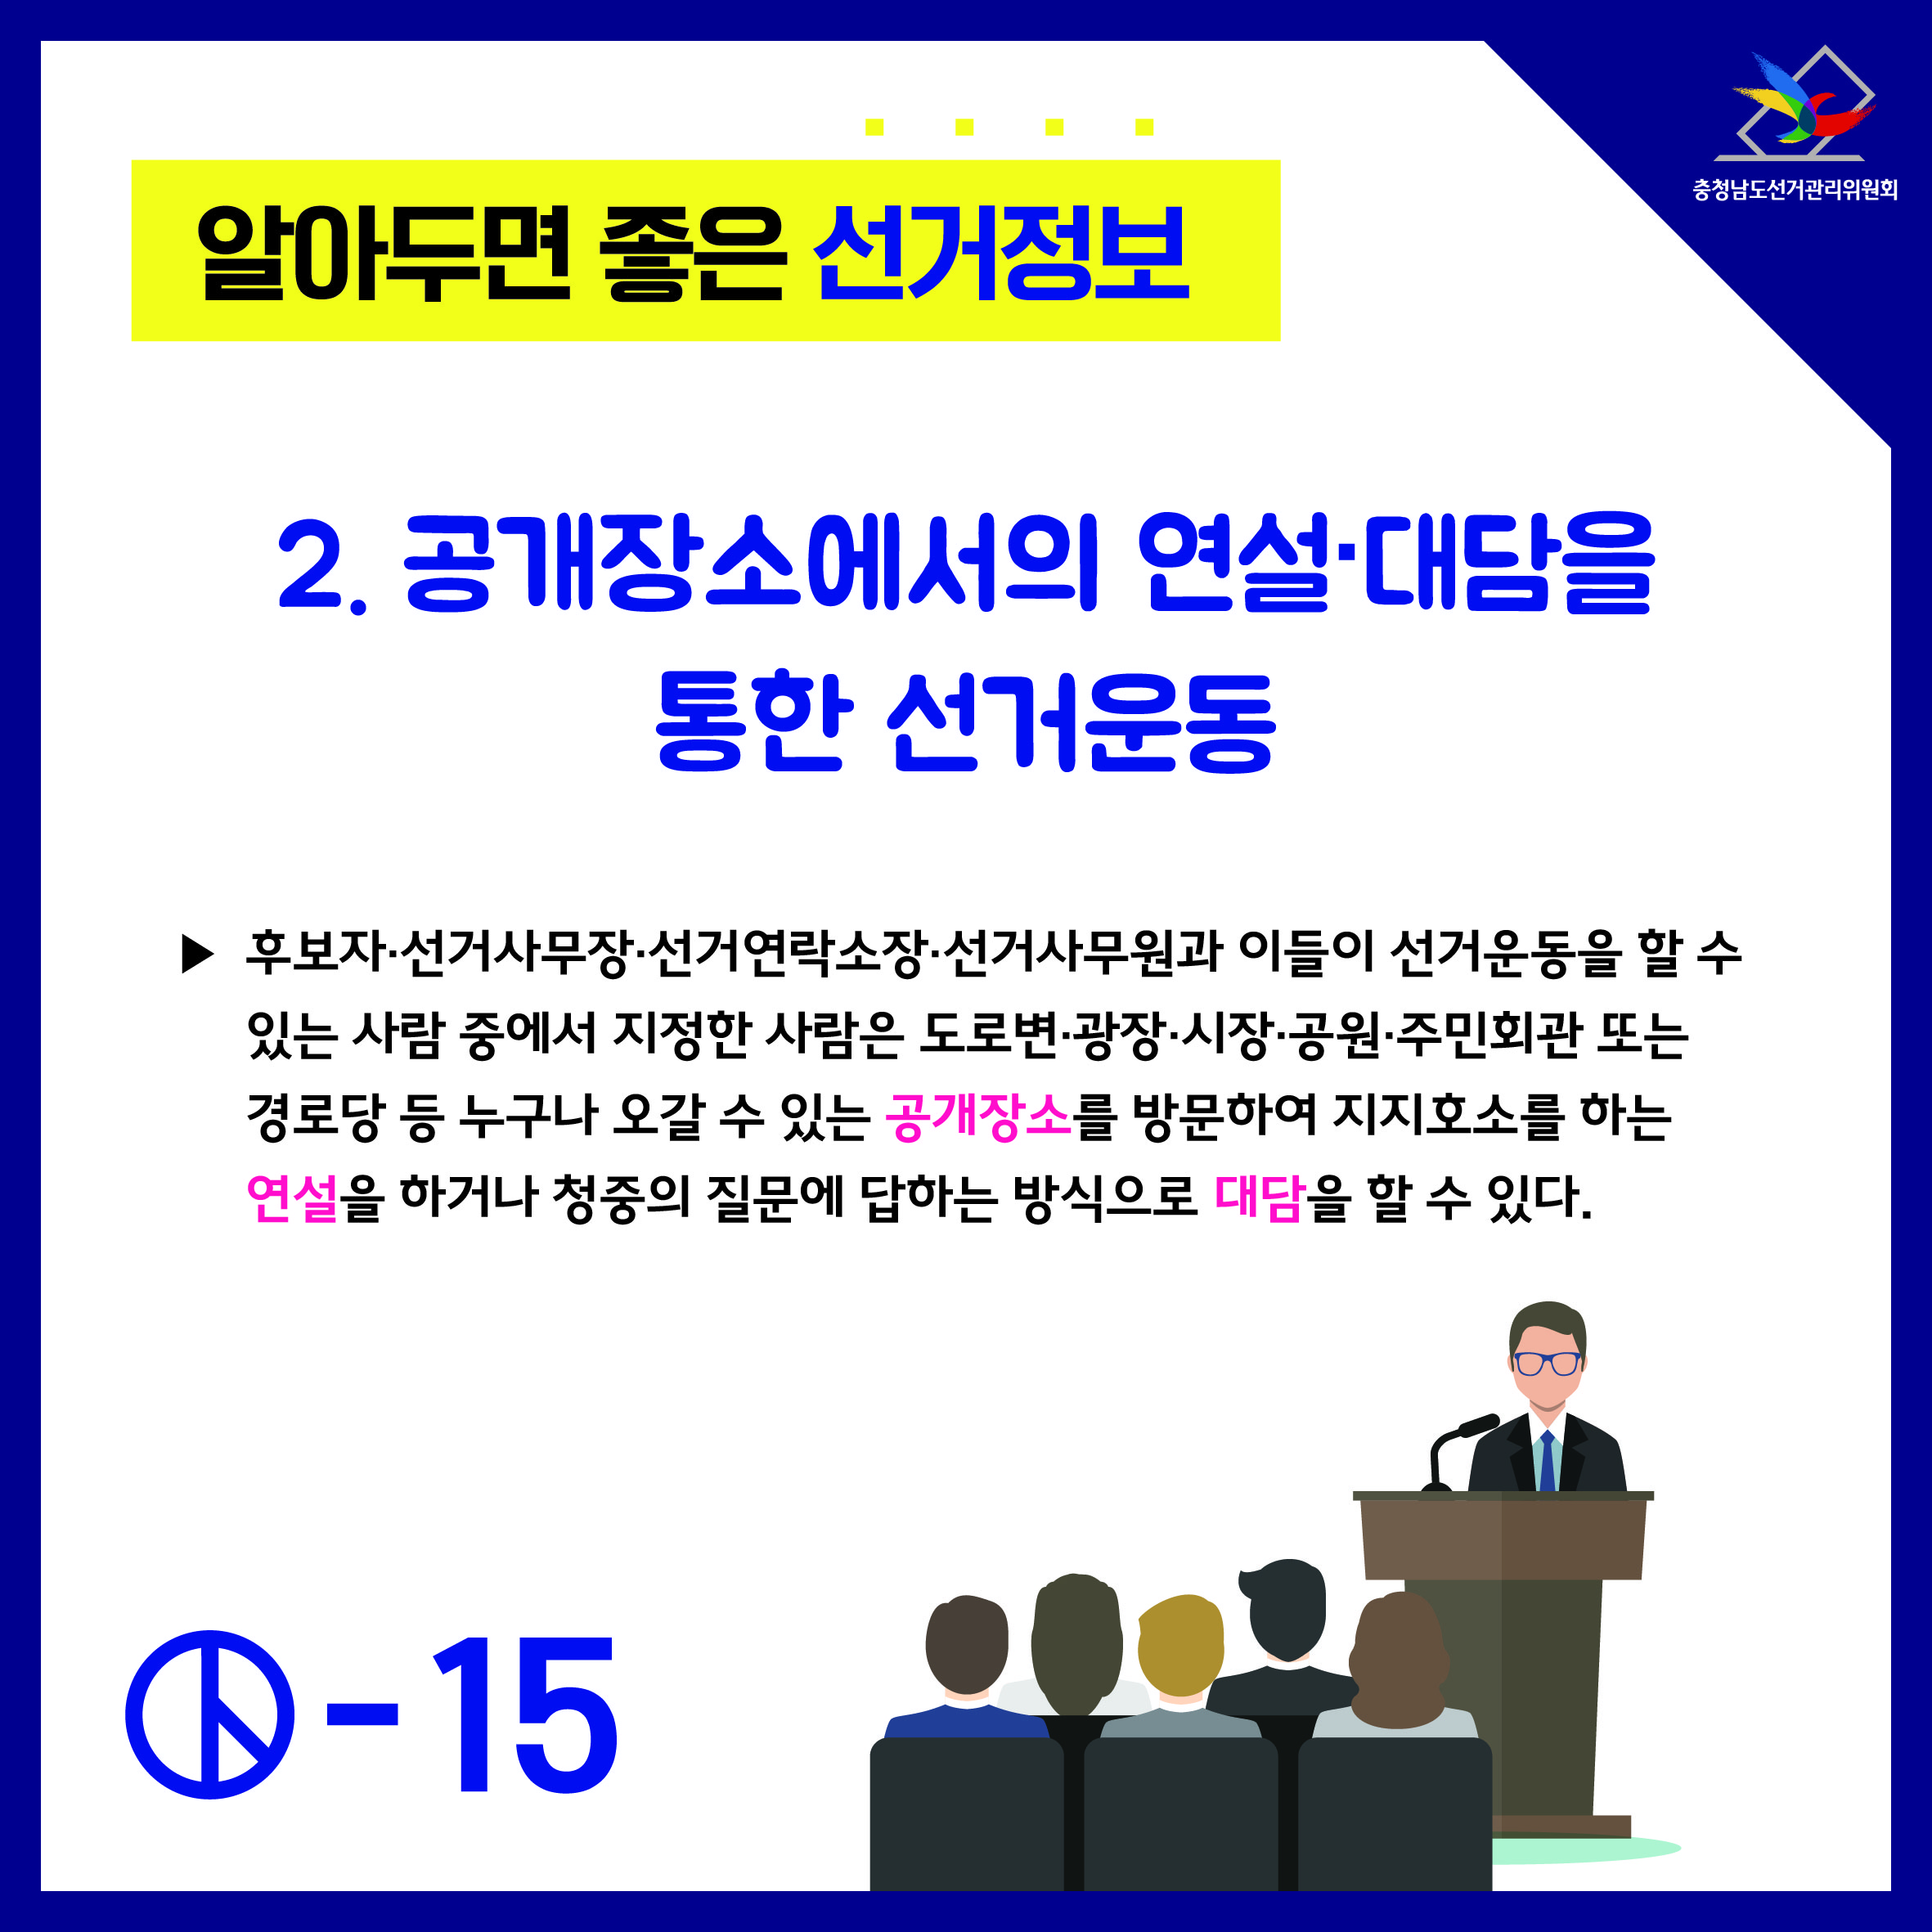 알아두면 좋은 선거정보 후보자의 선거운동 4(공개장소에서의 연설대담을 통한 선거운동)